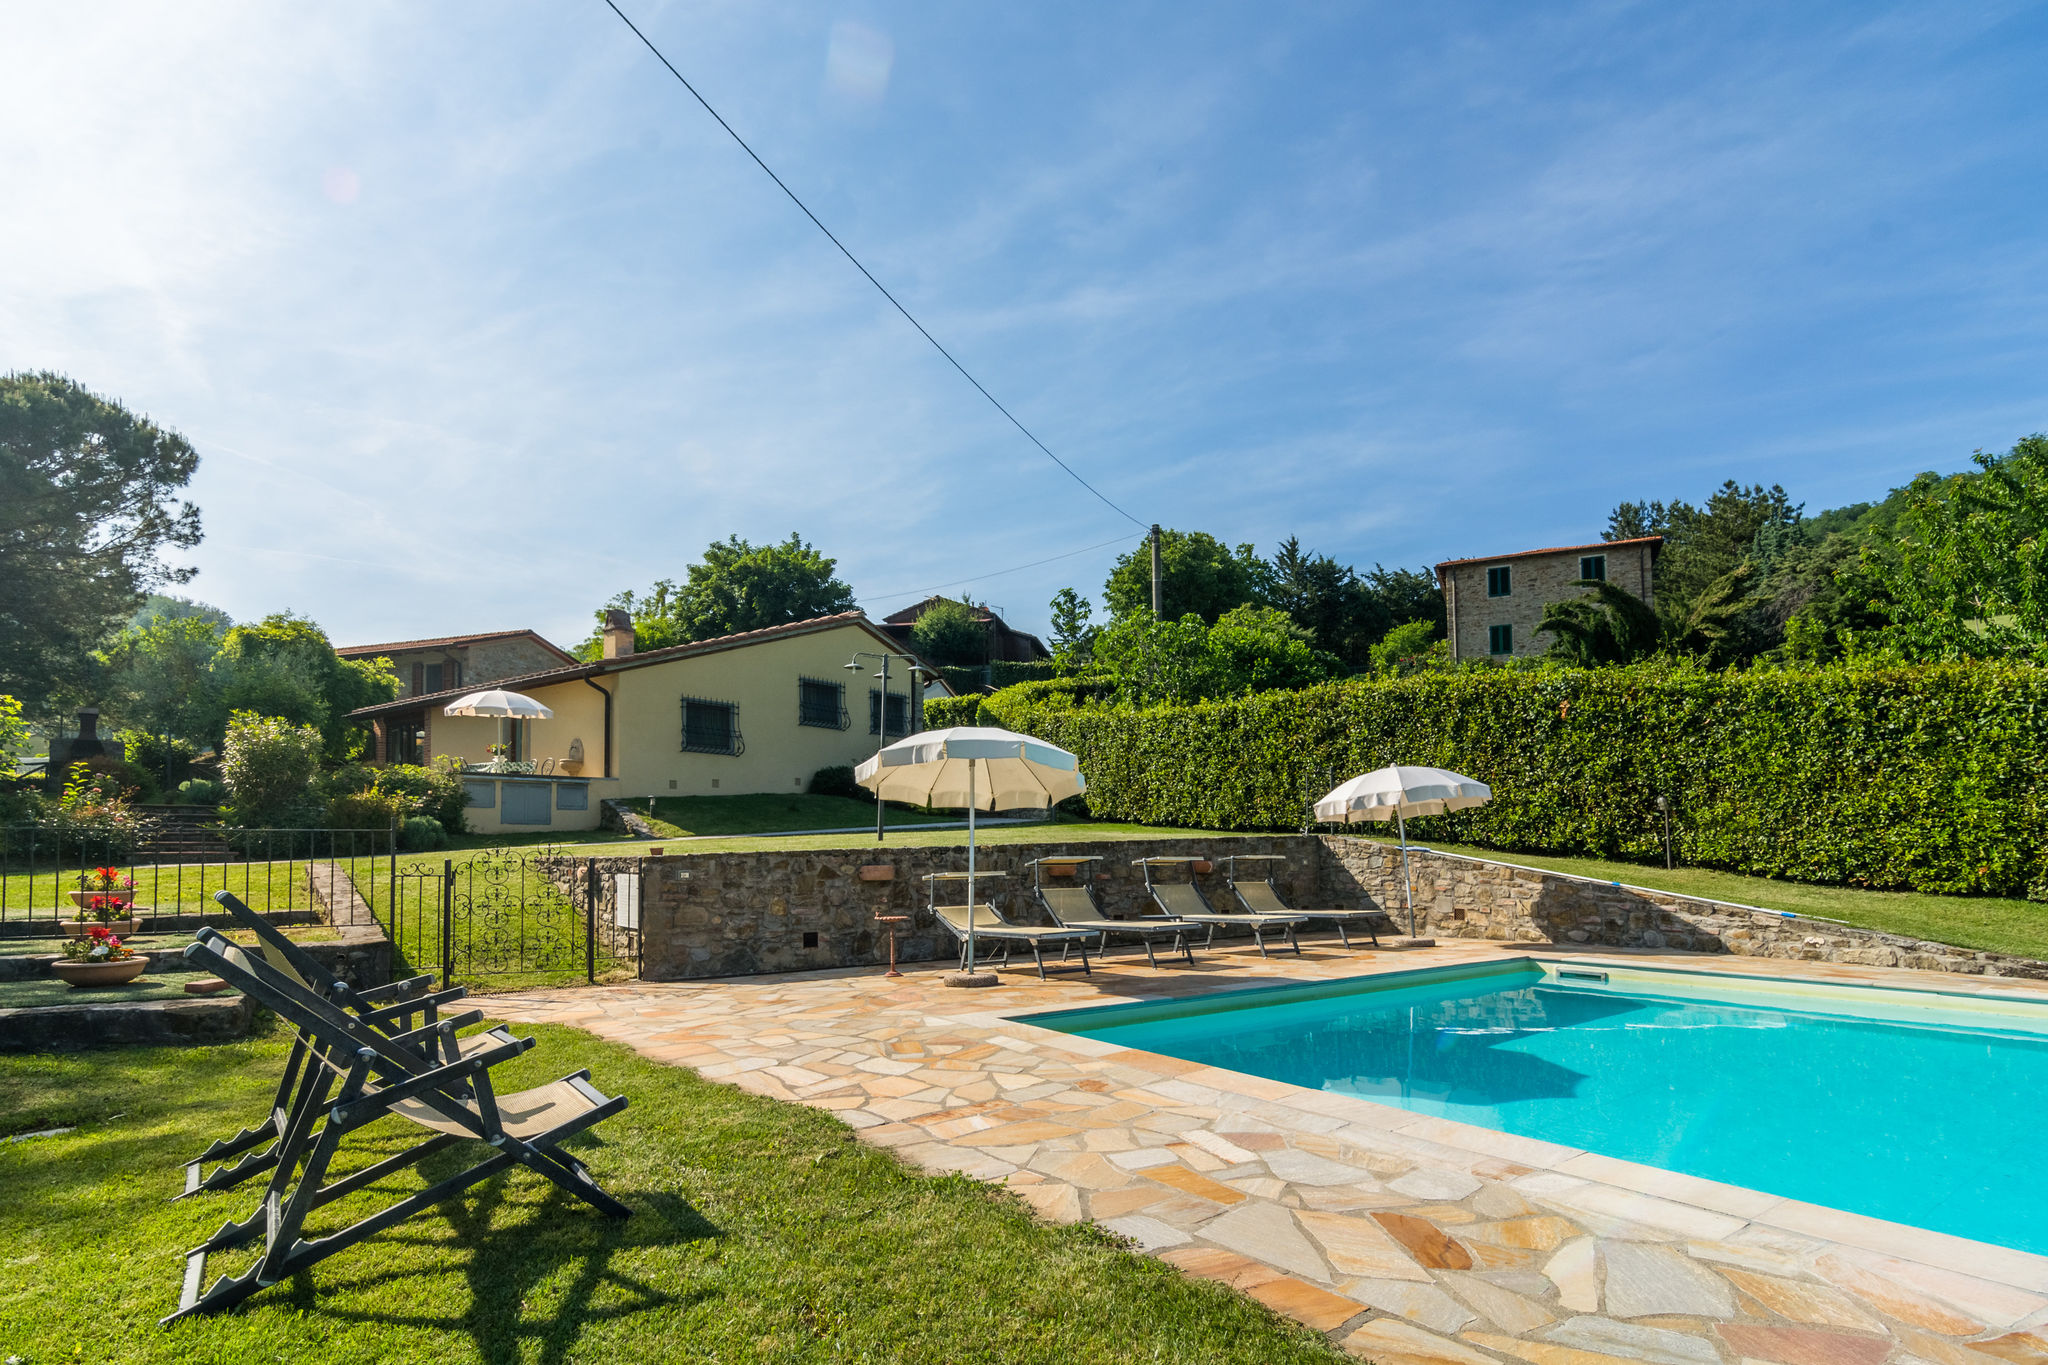 Prachtige cottage met zwembad in Dicomano, Italië